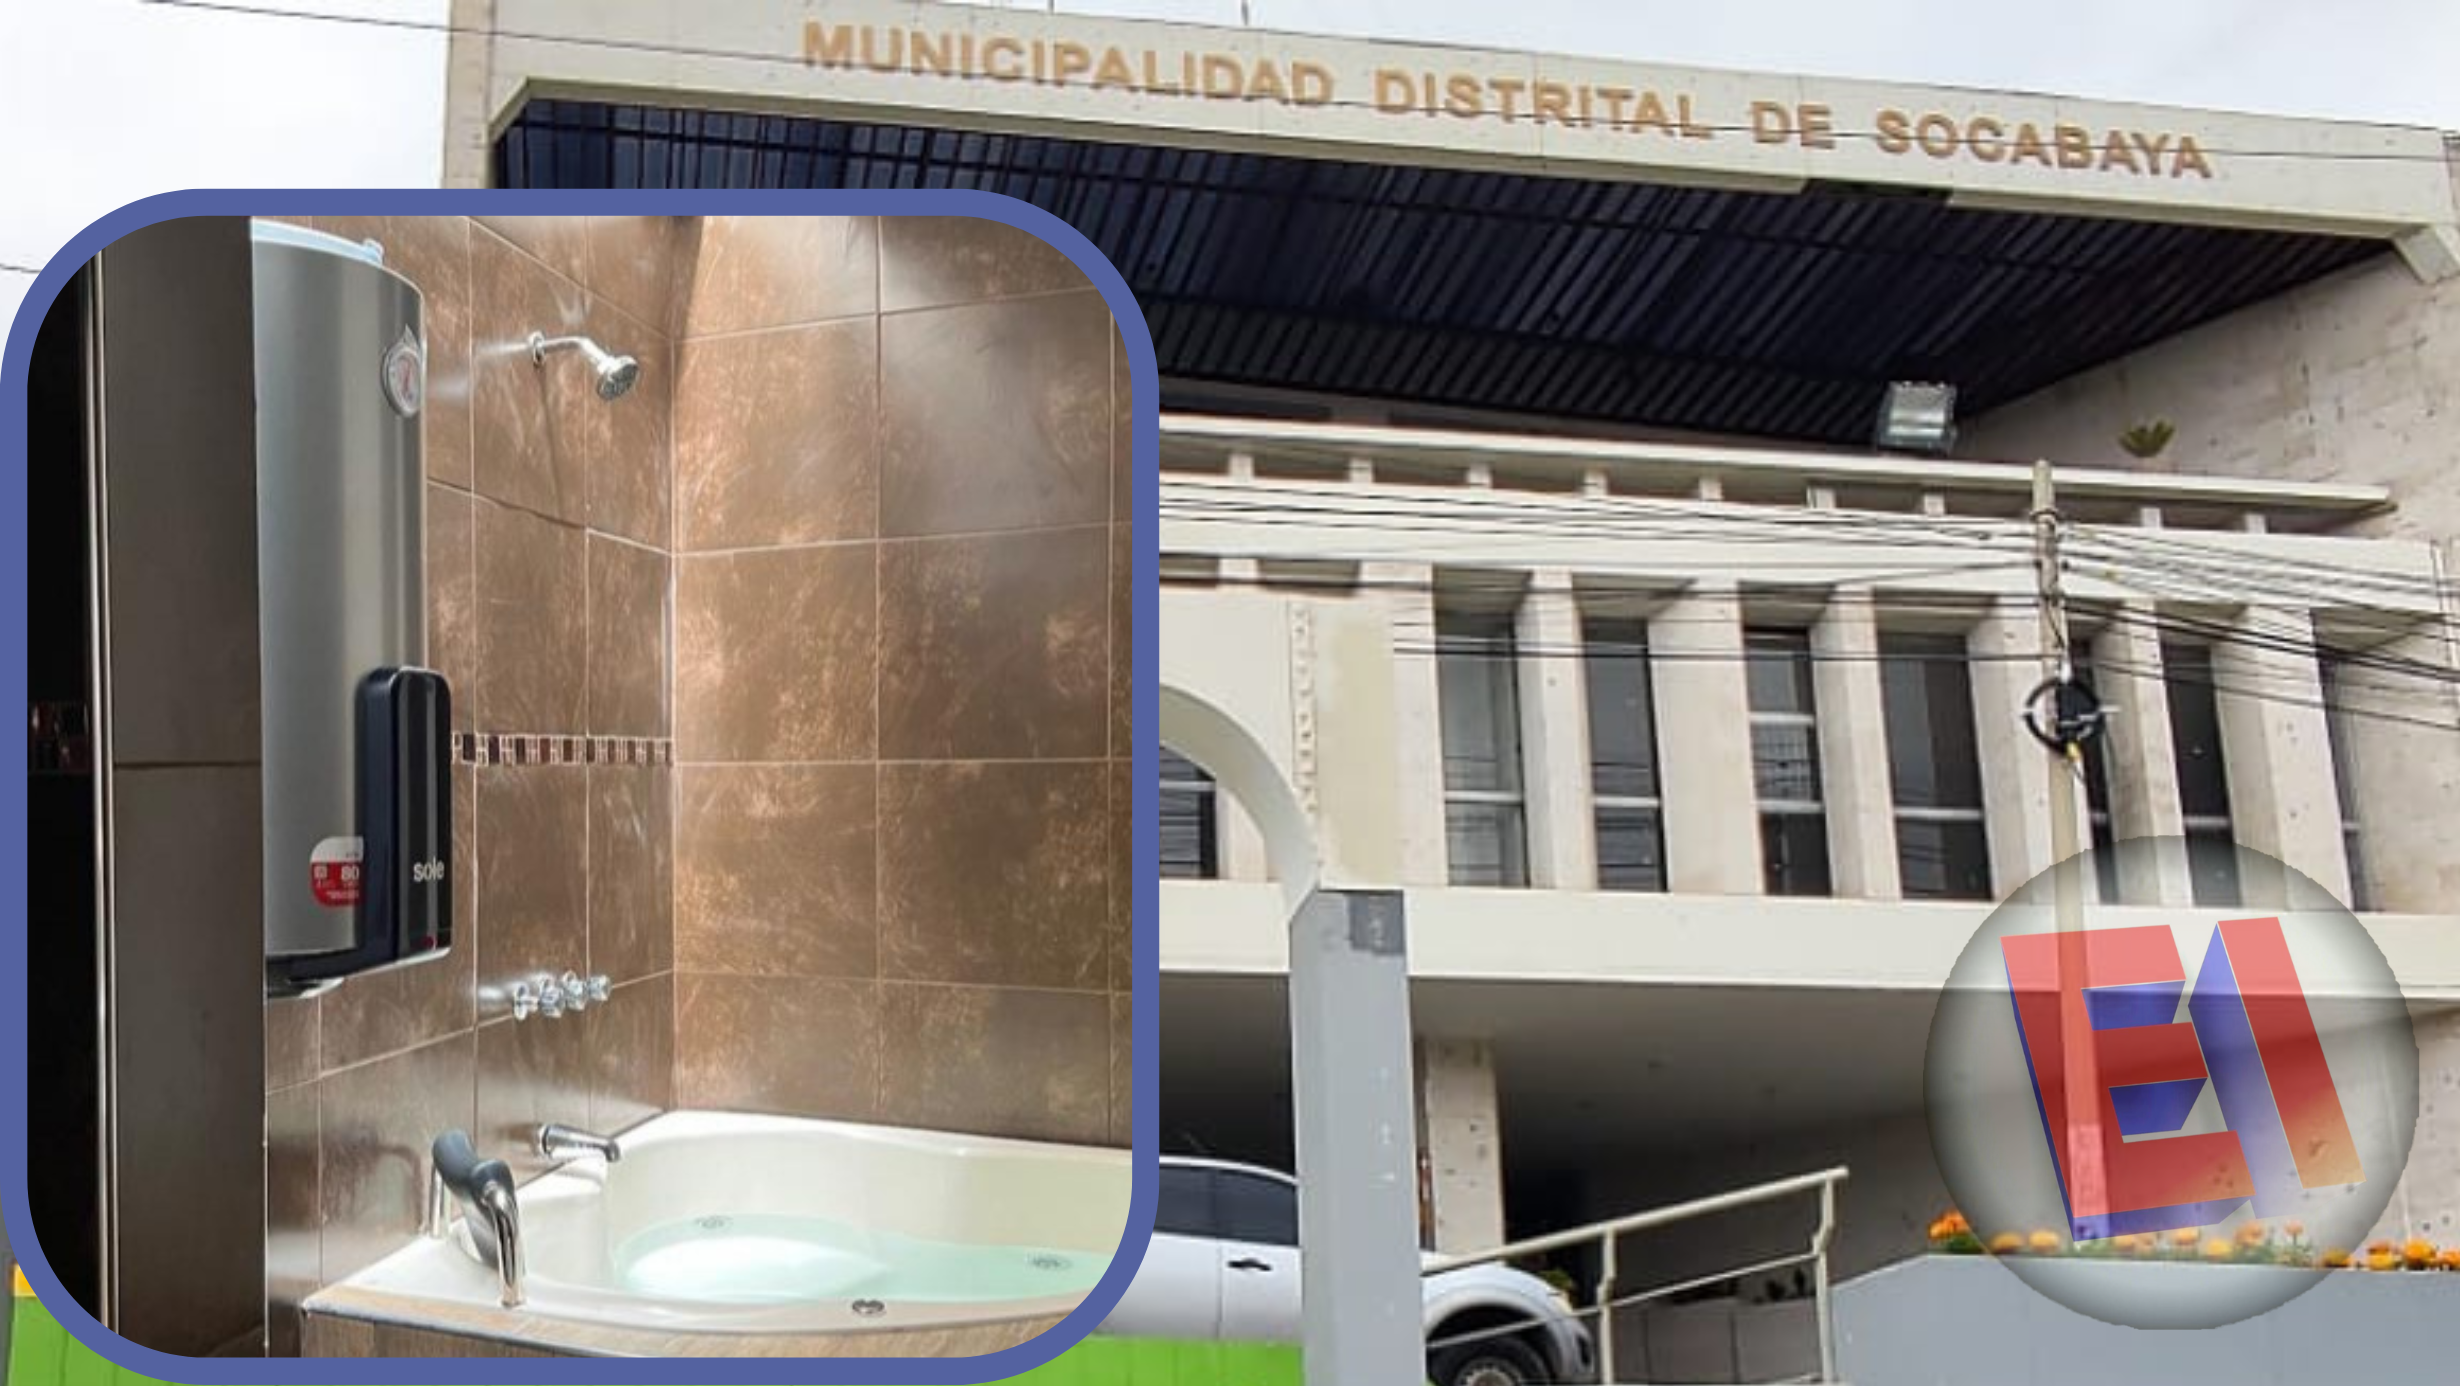 Agentes Anticorrupción intervienen Municipio de Socabaya y ordenan el retiro del Jacuzzi y trotadora instalada en oficina municipal